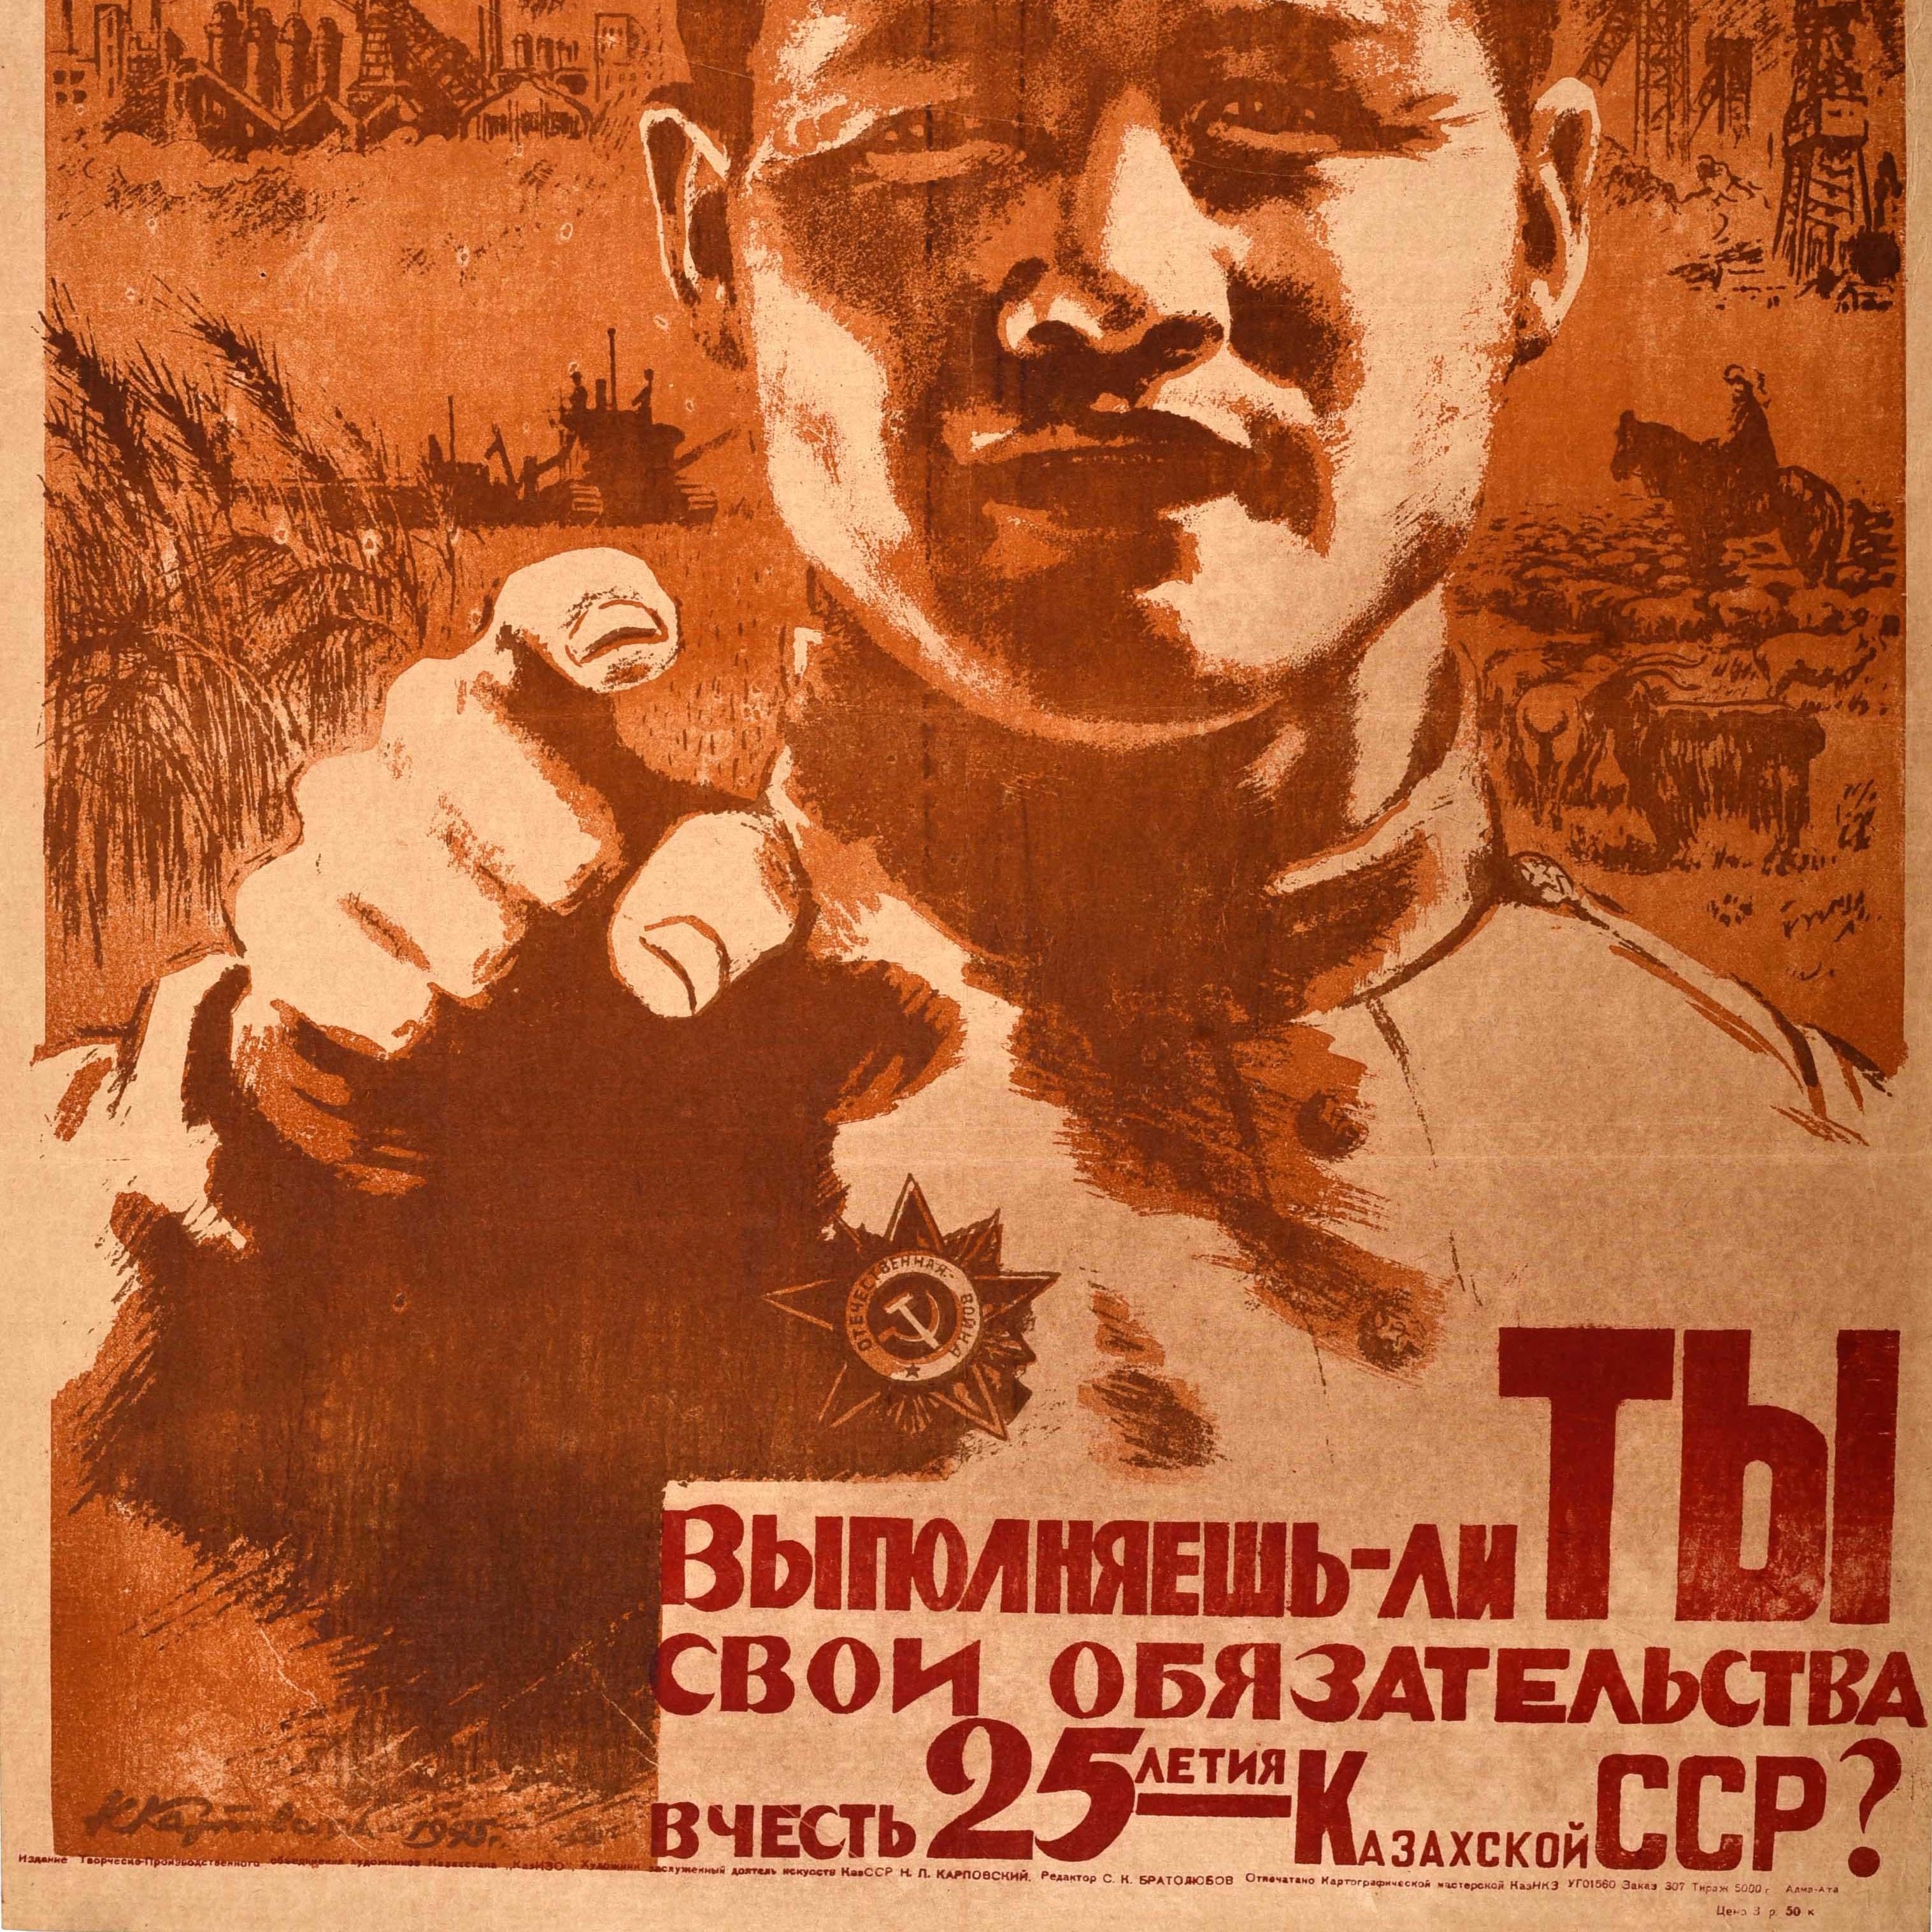 Originales sowjetisches Propagandaplakat - Erfüllen Sie Ihre Pflichten zu Ehren des 25. Jahrestages der Kasachischen SSR? - mit einem Soldaten in Militäruniform, der auf den Betrachter zeigt, und Bildern von Landwirtschaft und Industrie, darunter